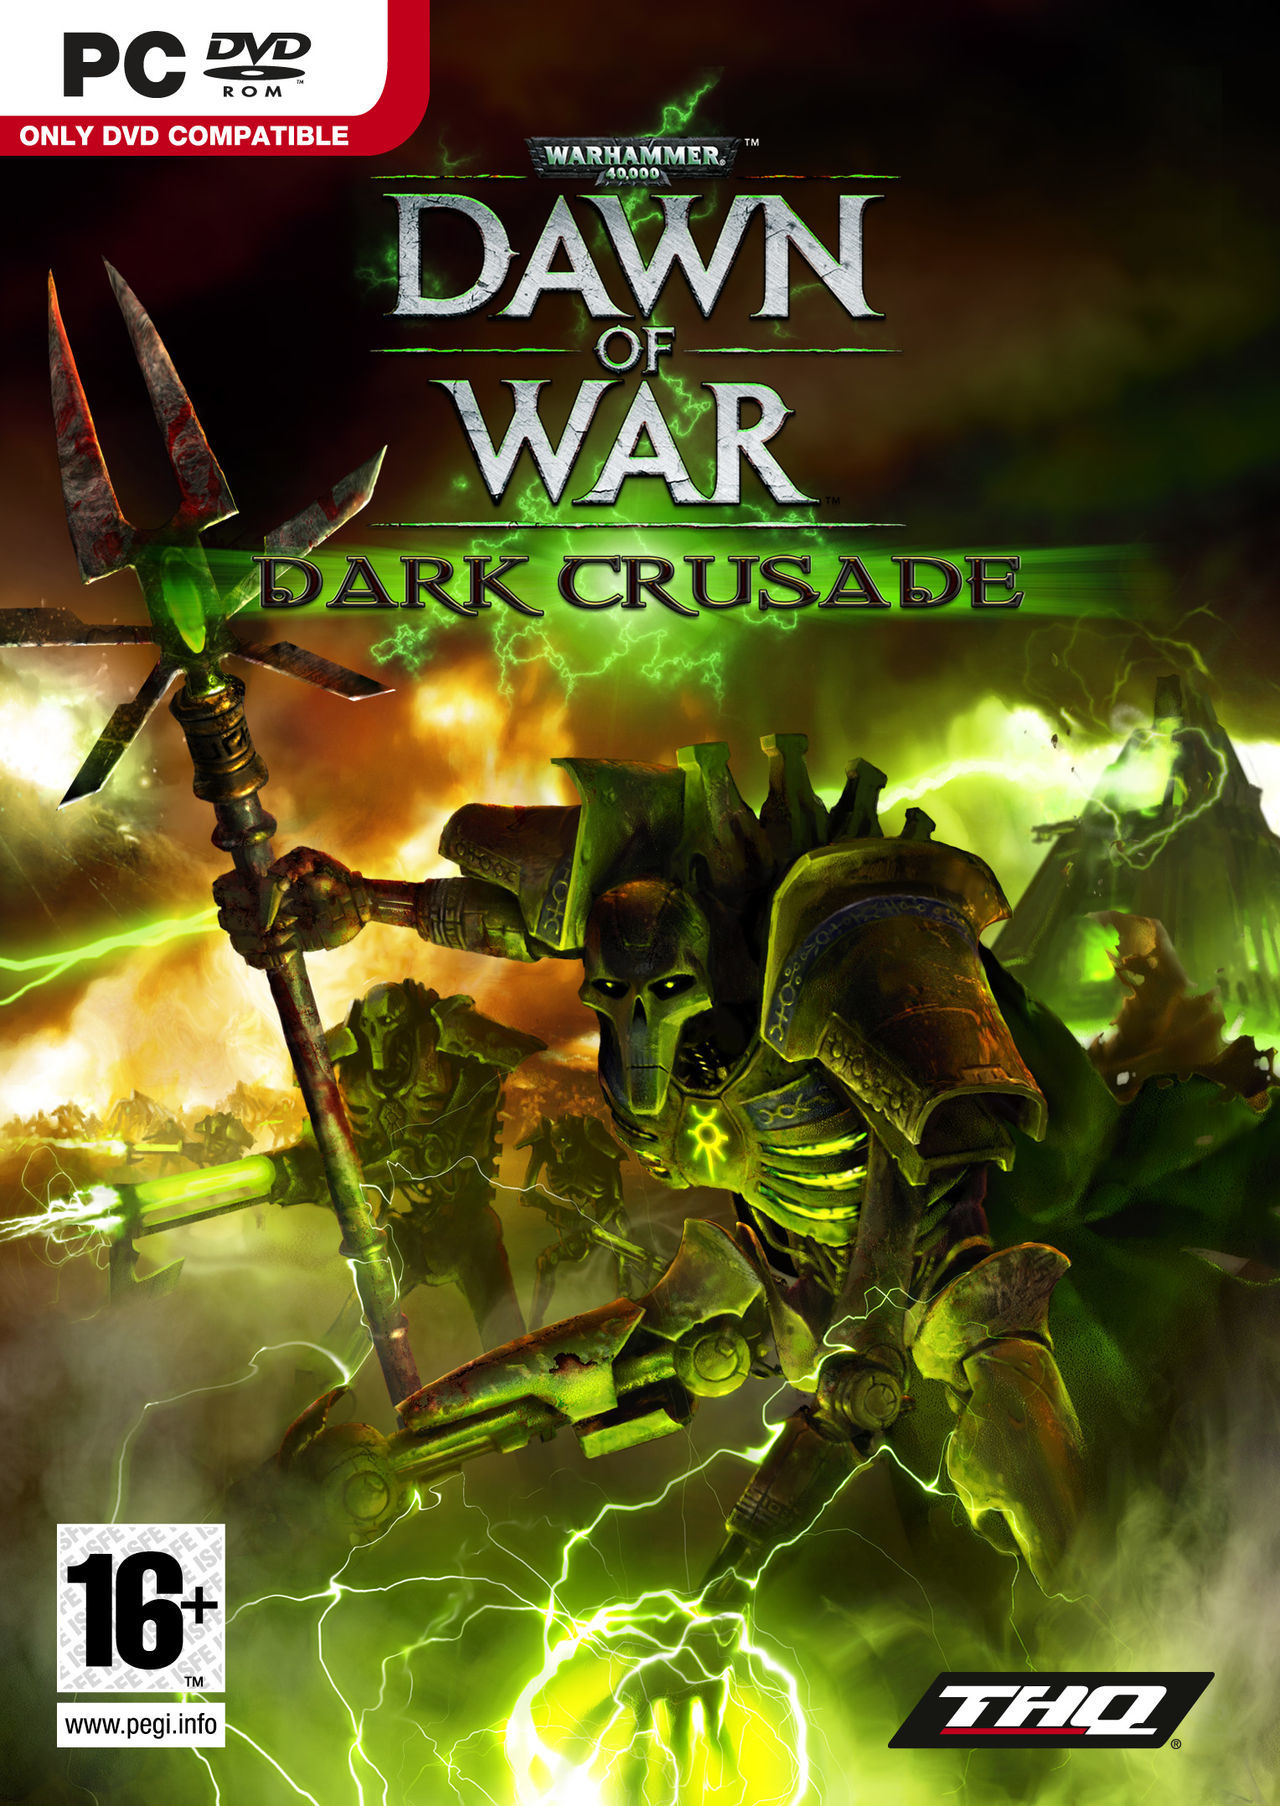 warhammer 40k dawn of war dark crusade download free